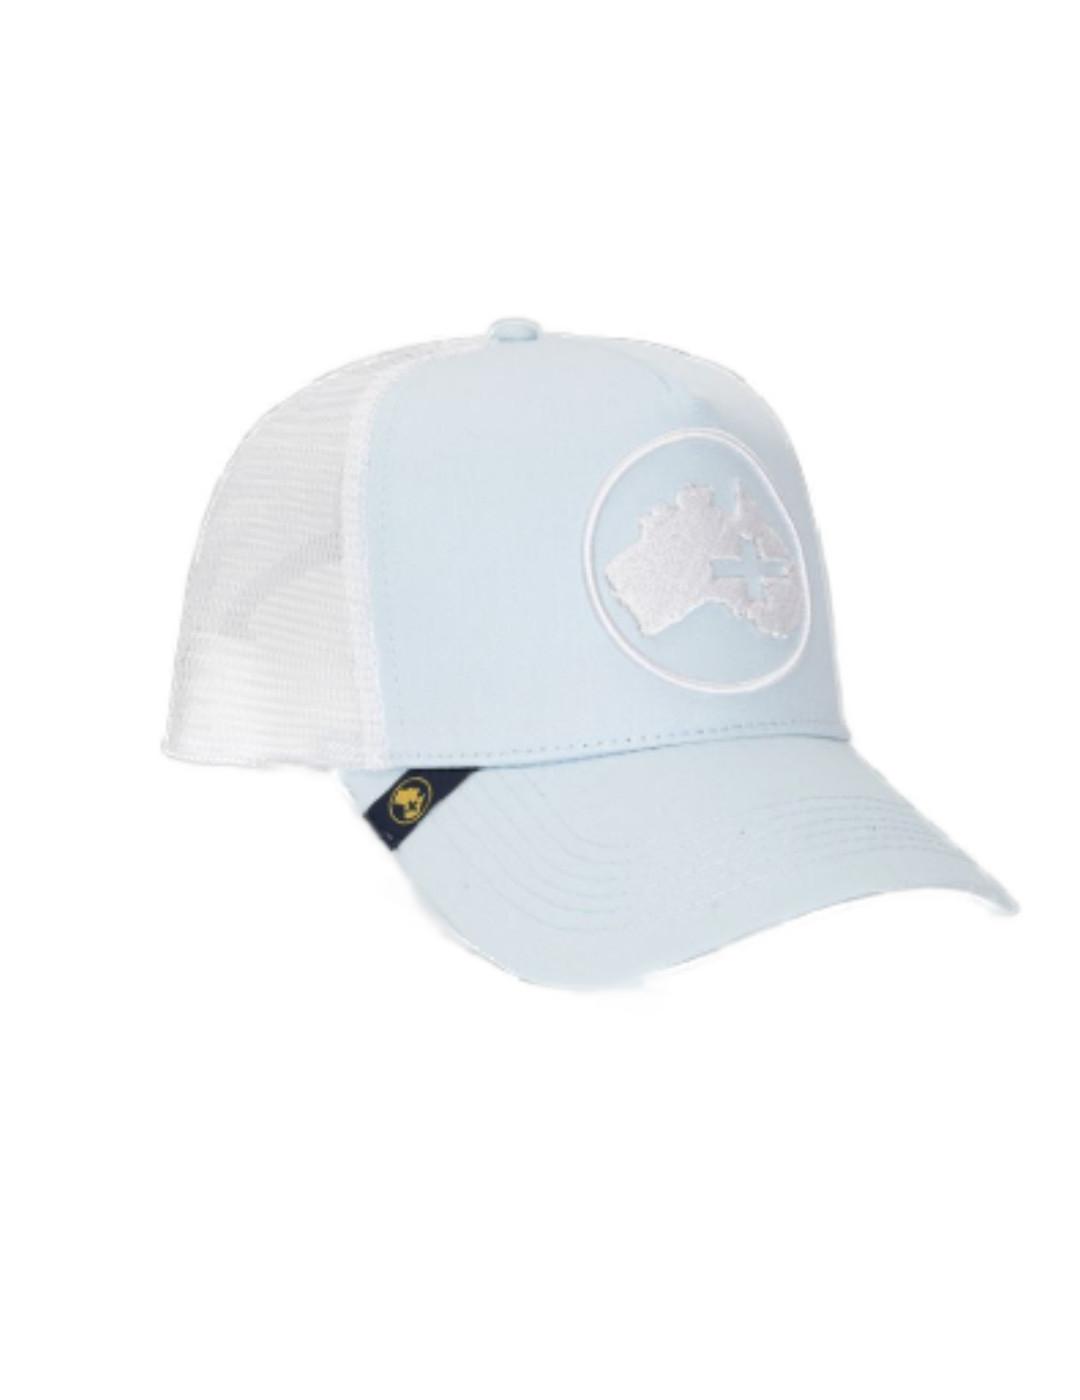 Gorra Altonadock colores azul y blanca con logo unisex